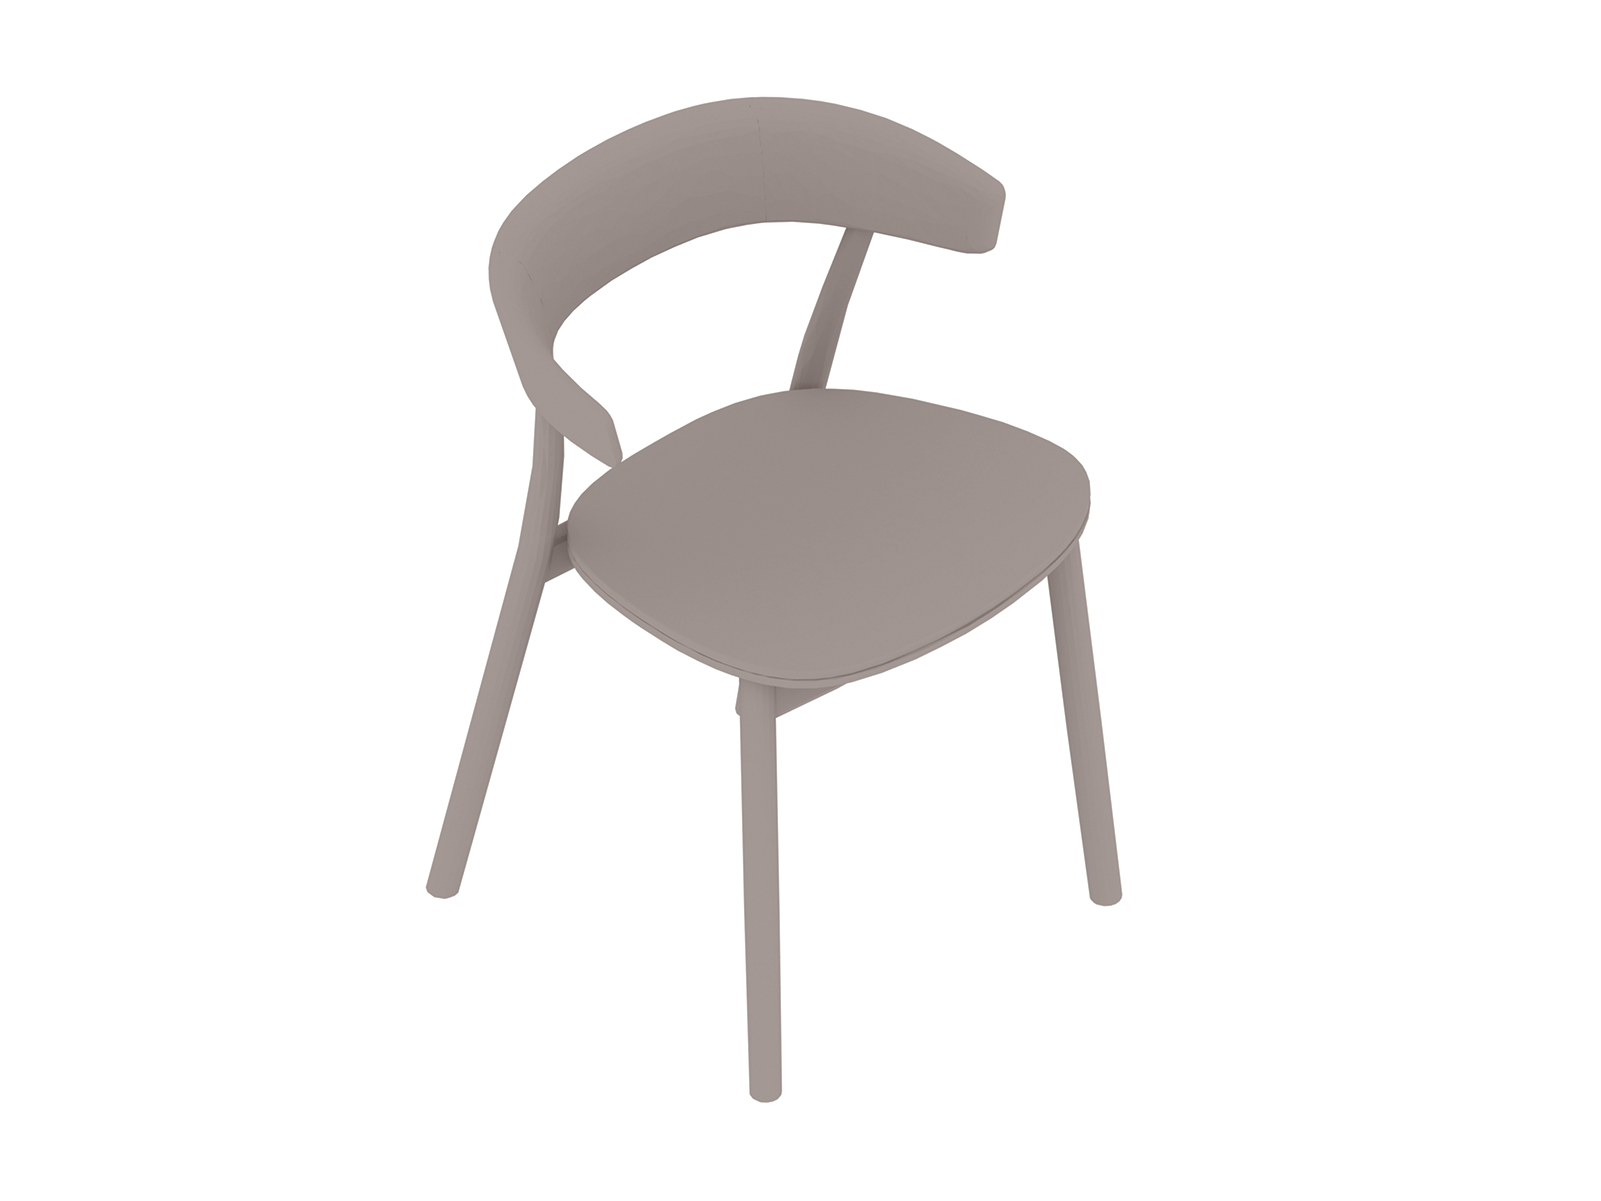 Un rendering generico - Seduta Leeway - telaio in legno - sedile imbottito